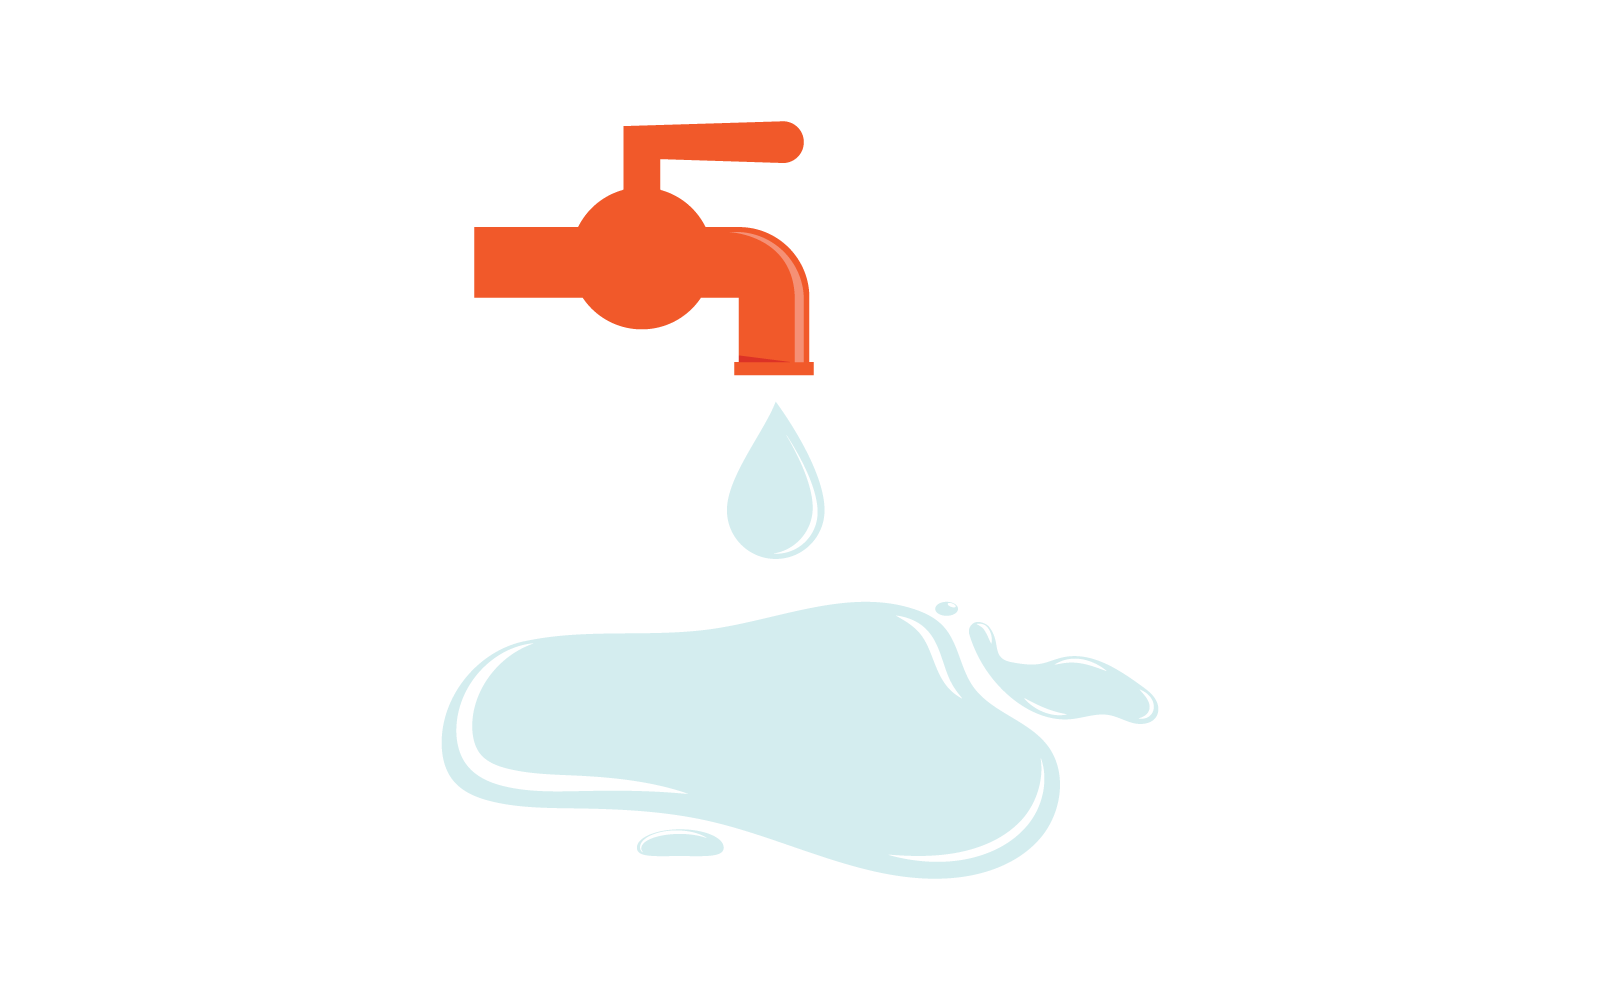 Water Plumbing logo vector design template